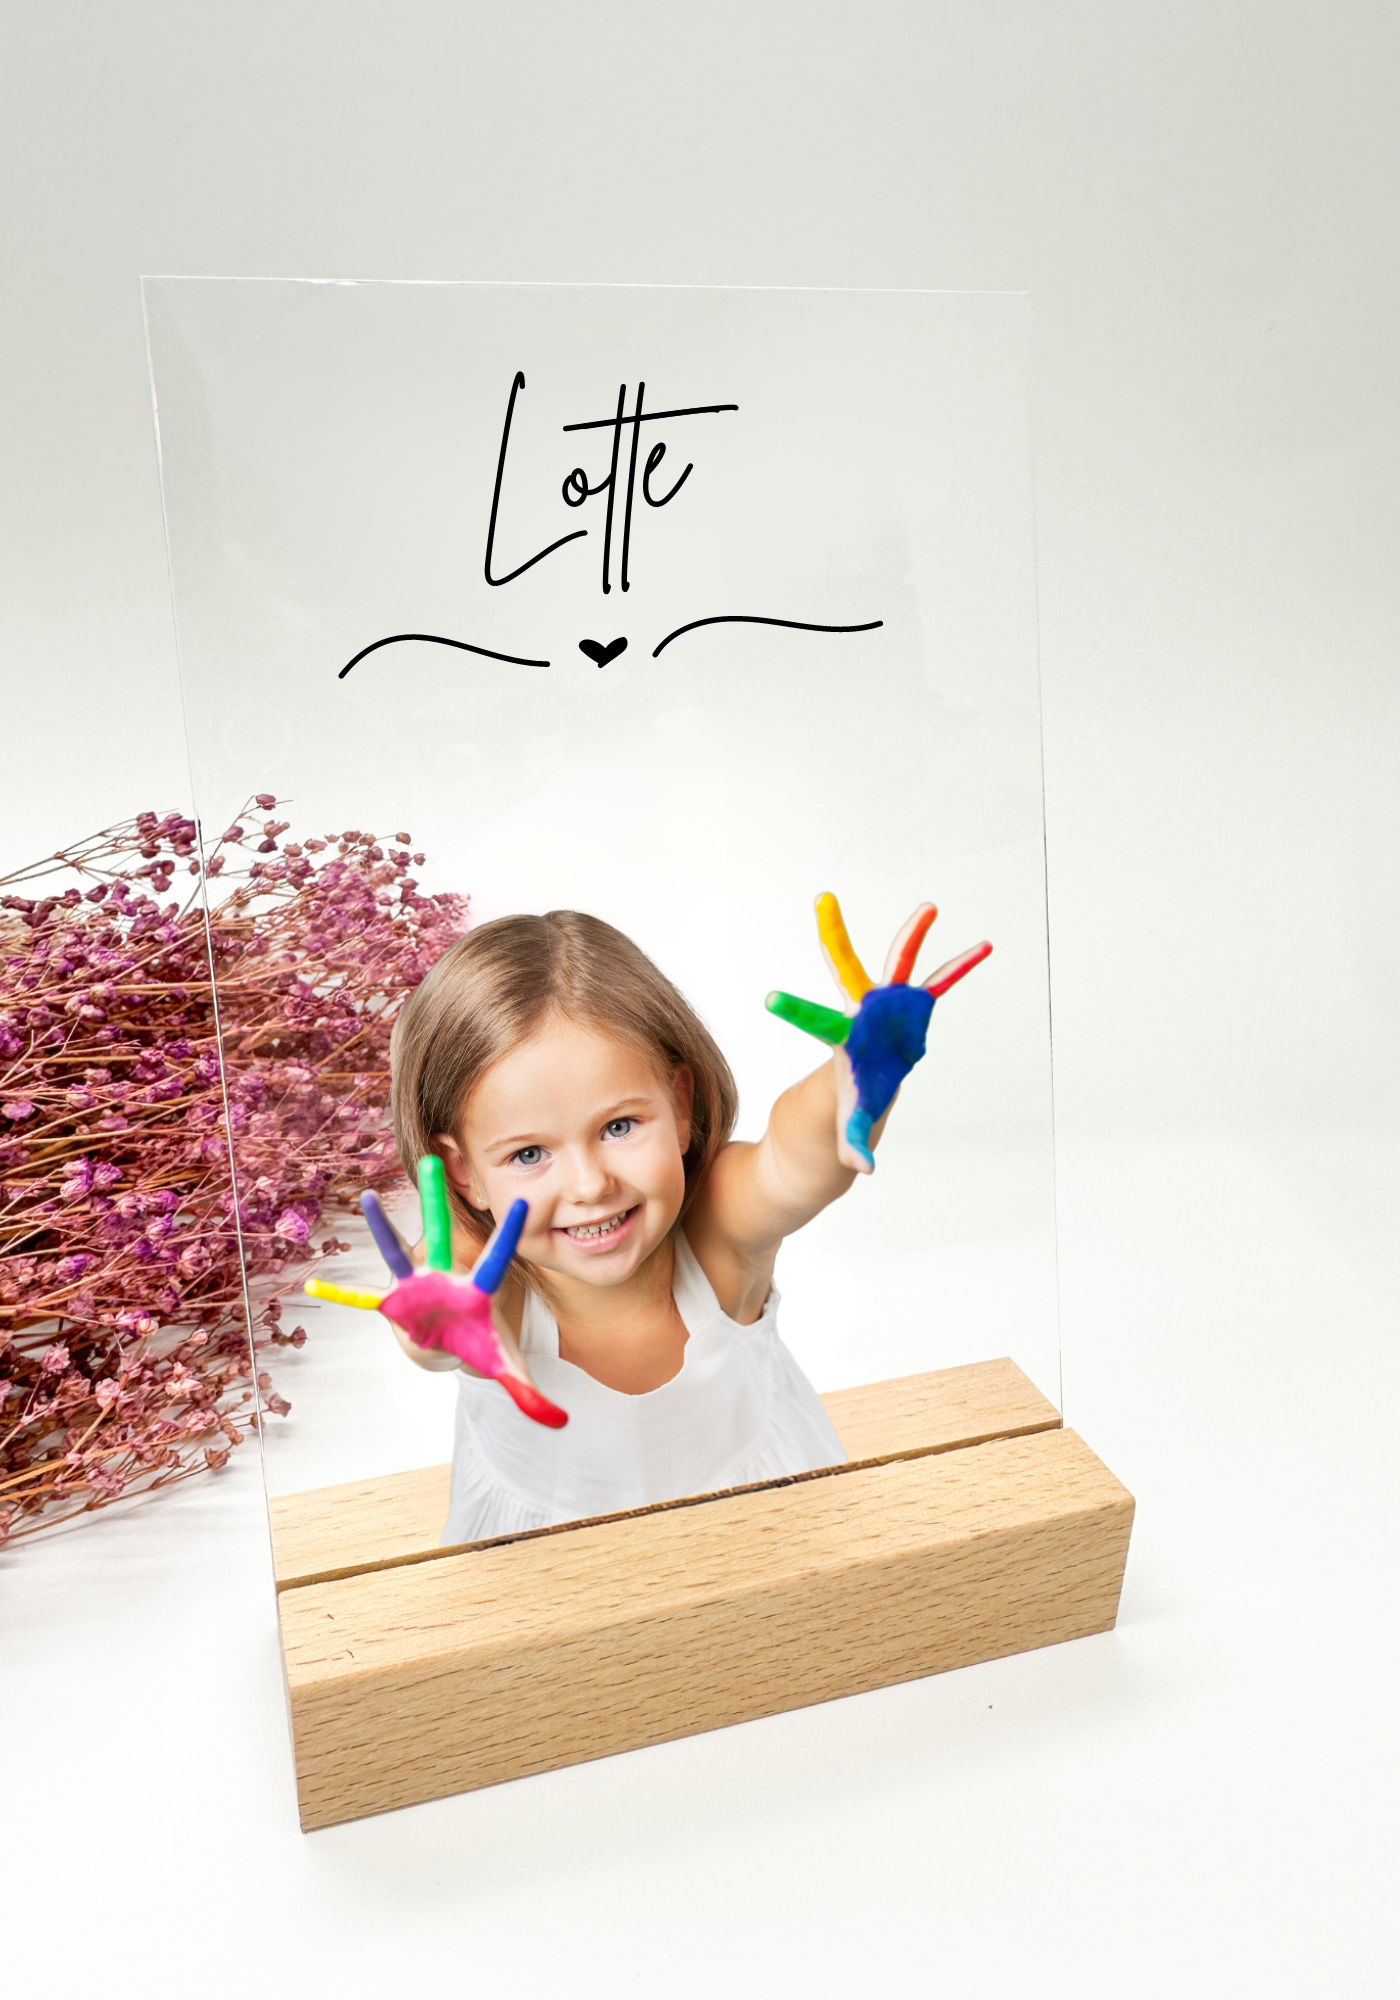 Kinderfoto auf Acrylglas/Geschenk für Eltern/Geschenk zum Geburtstags/ Geschenk Mutter / Geschenk Vater